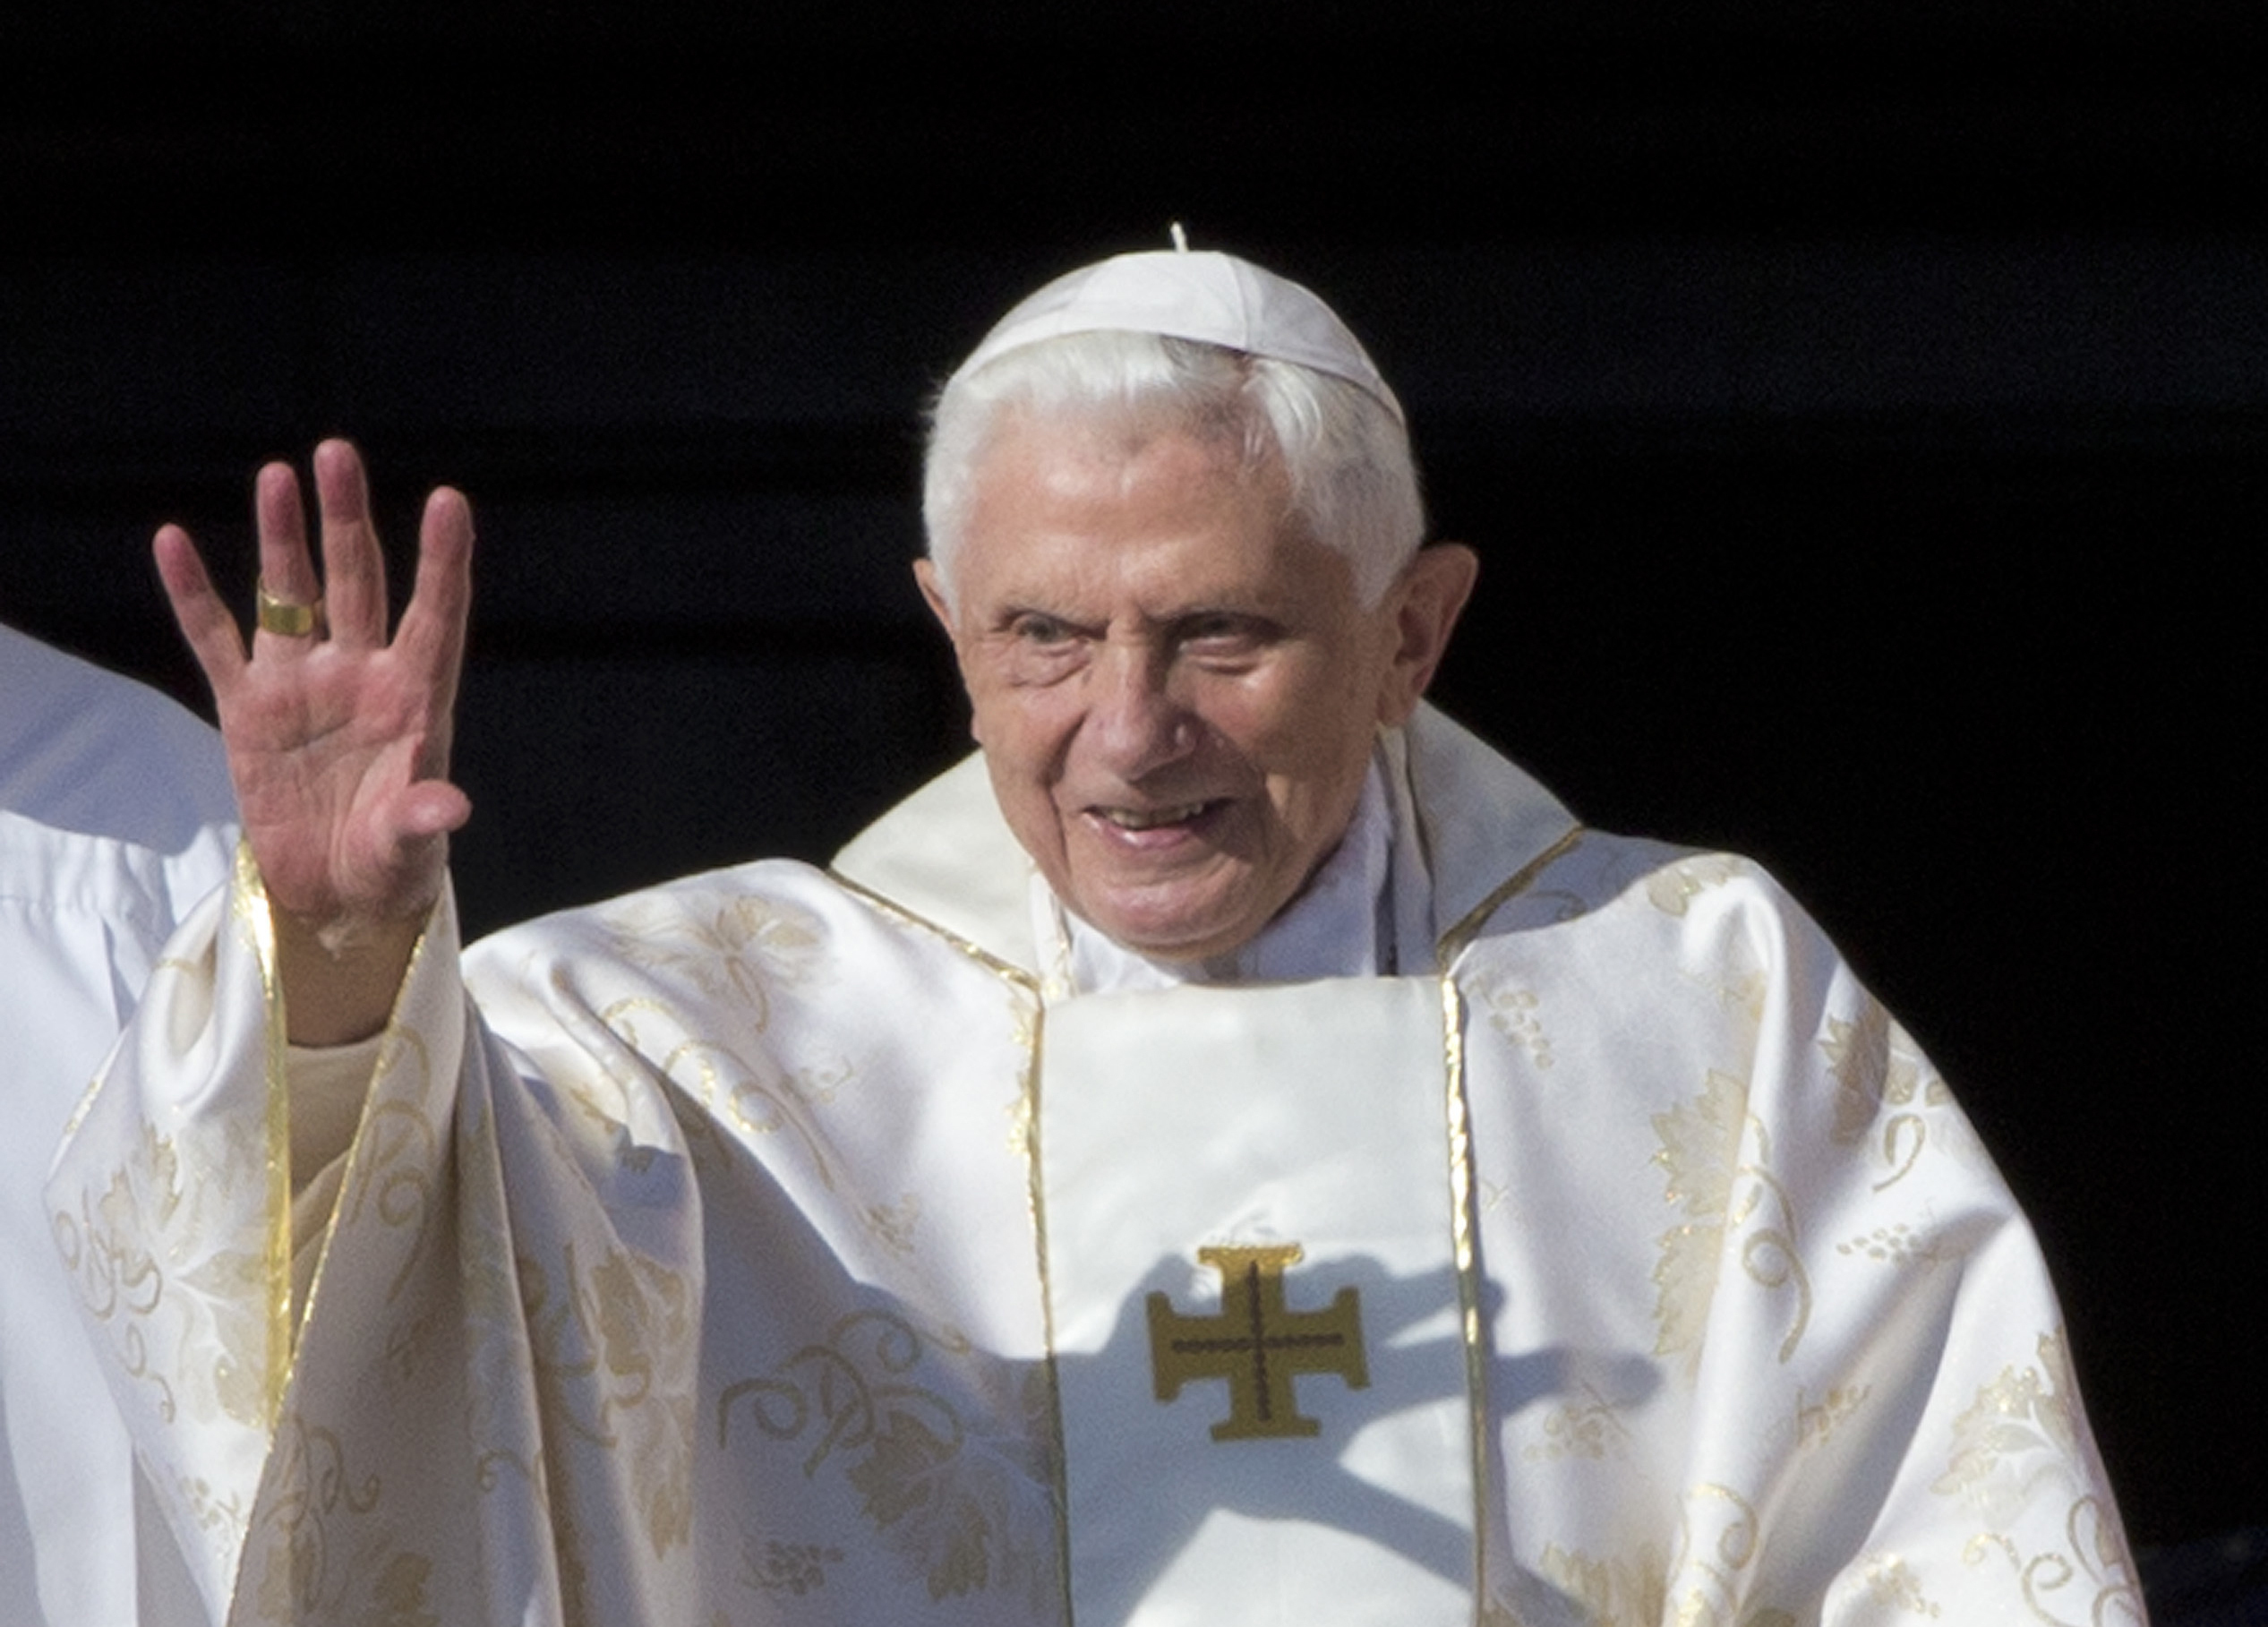 El Papa Emérito Benedicto XVI, quien nació en 1927, presentó deterioros en su salud en los últimos días. (AP Foto/Andrew Medichini, Archivo)